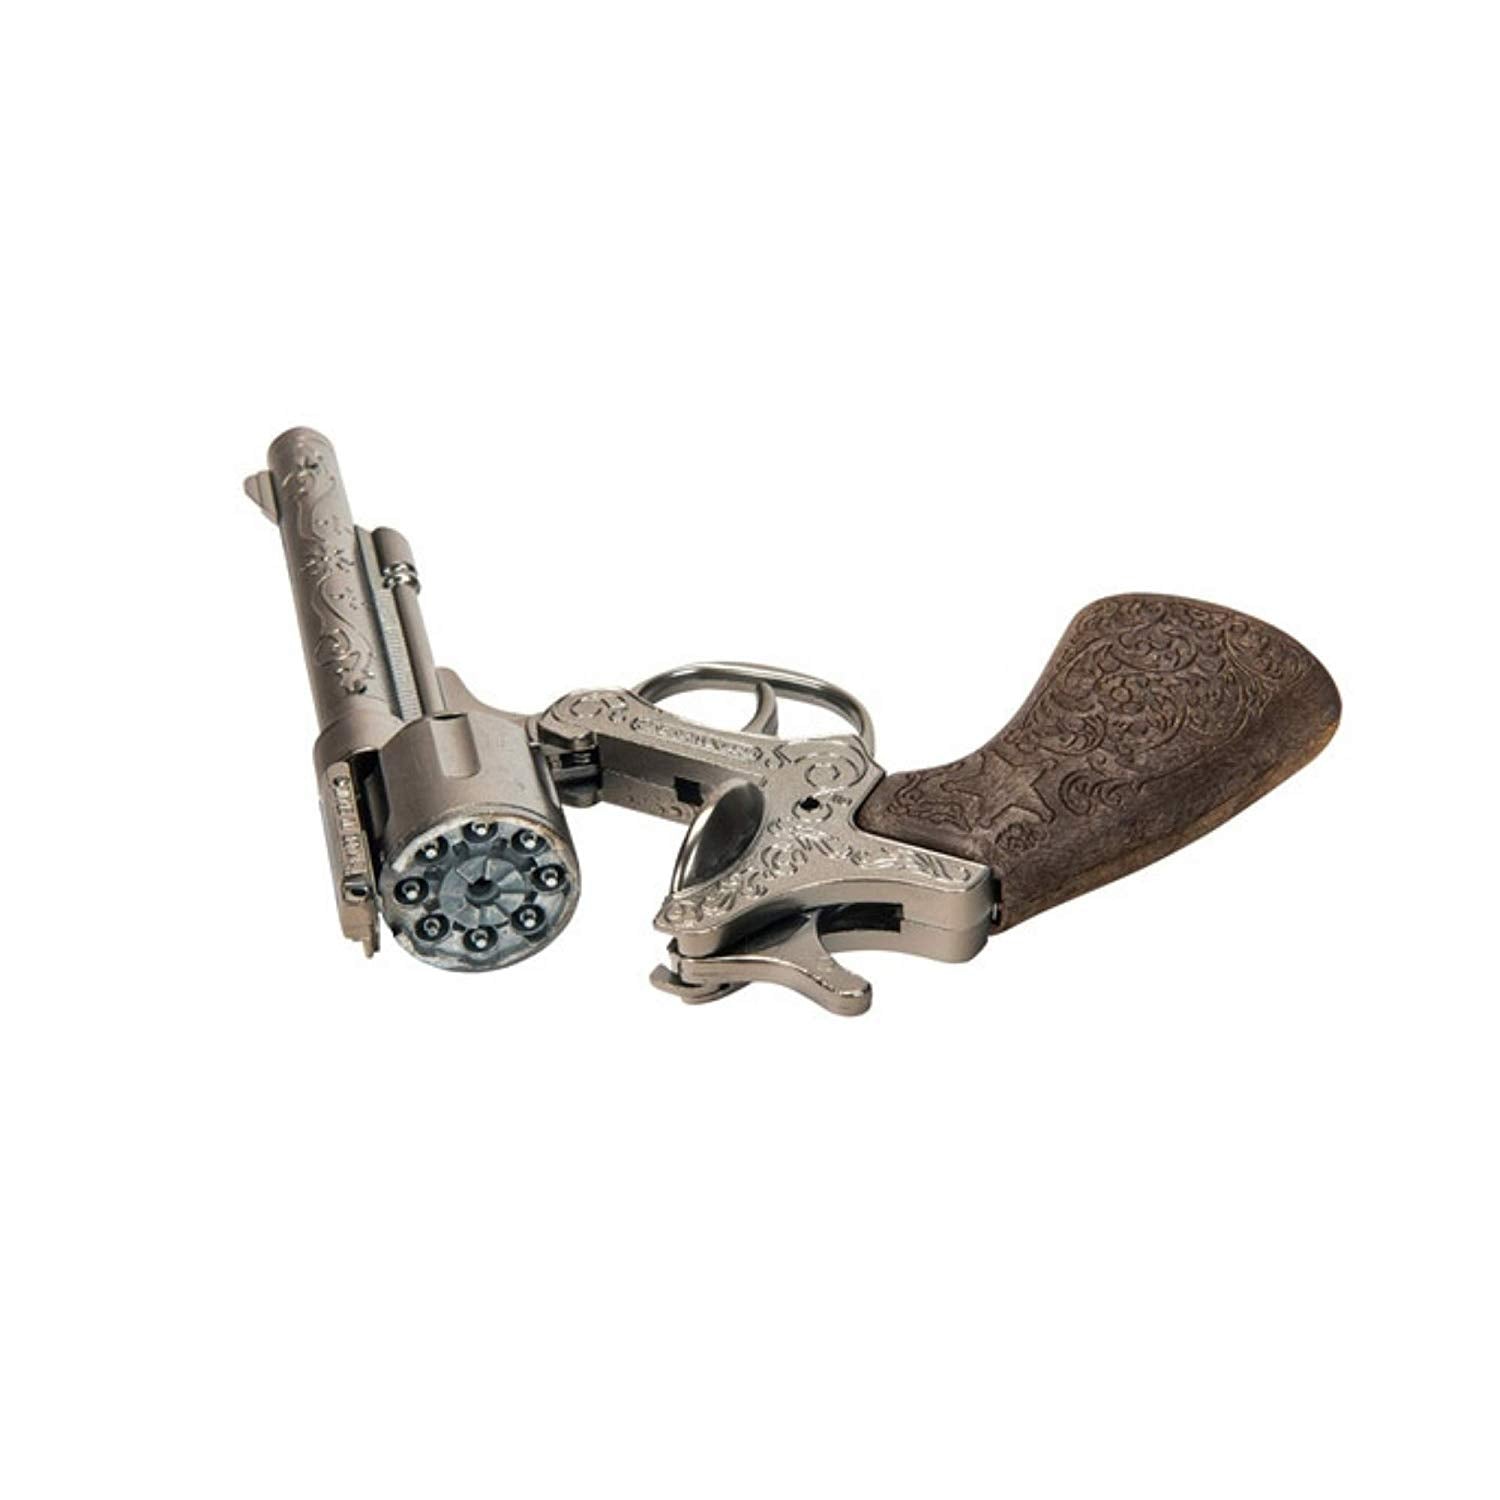 Gonher Wild West 8 Shot Single Gun Holster Totally Toys Ireland - gun hollister roblox